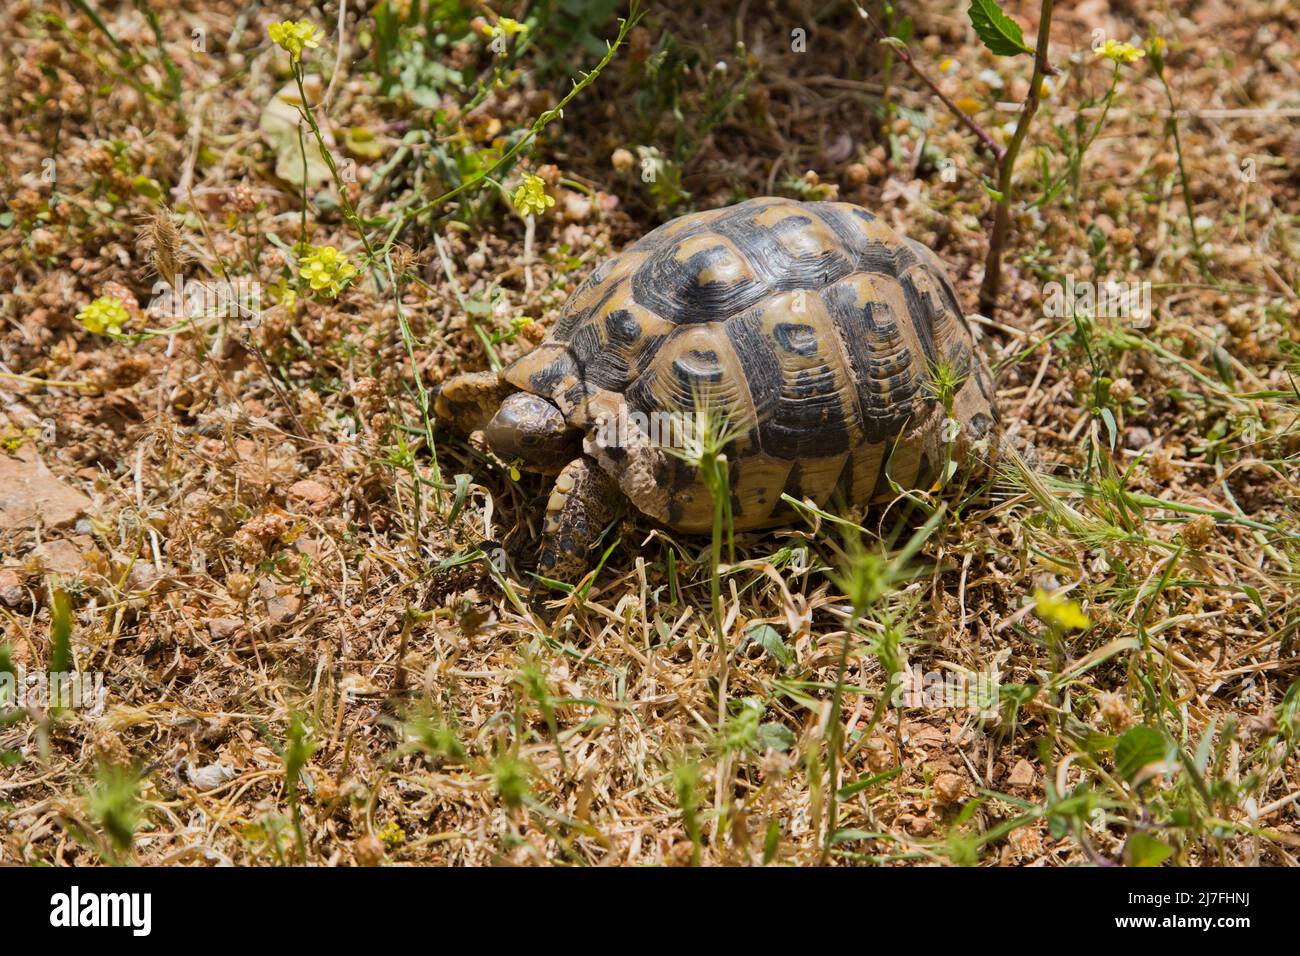 Nahaufnahme einer Schildkröte mit Spurthighed oder einer griechischen Schildkröte (Testudo graeca) in einem Feld. Fotografiert in Israel im März Stockfoto